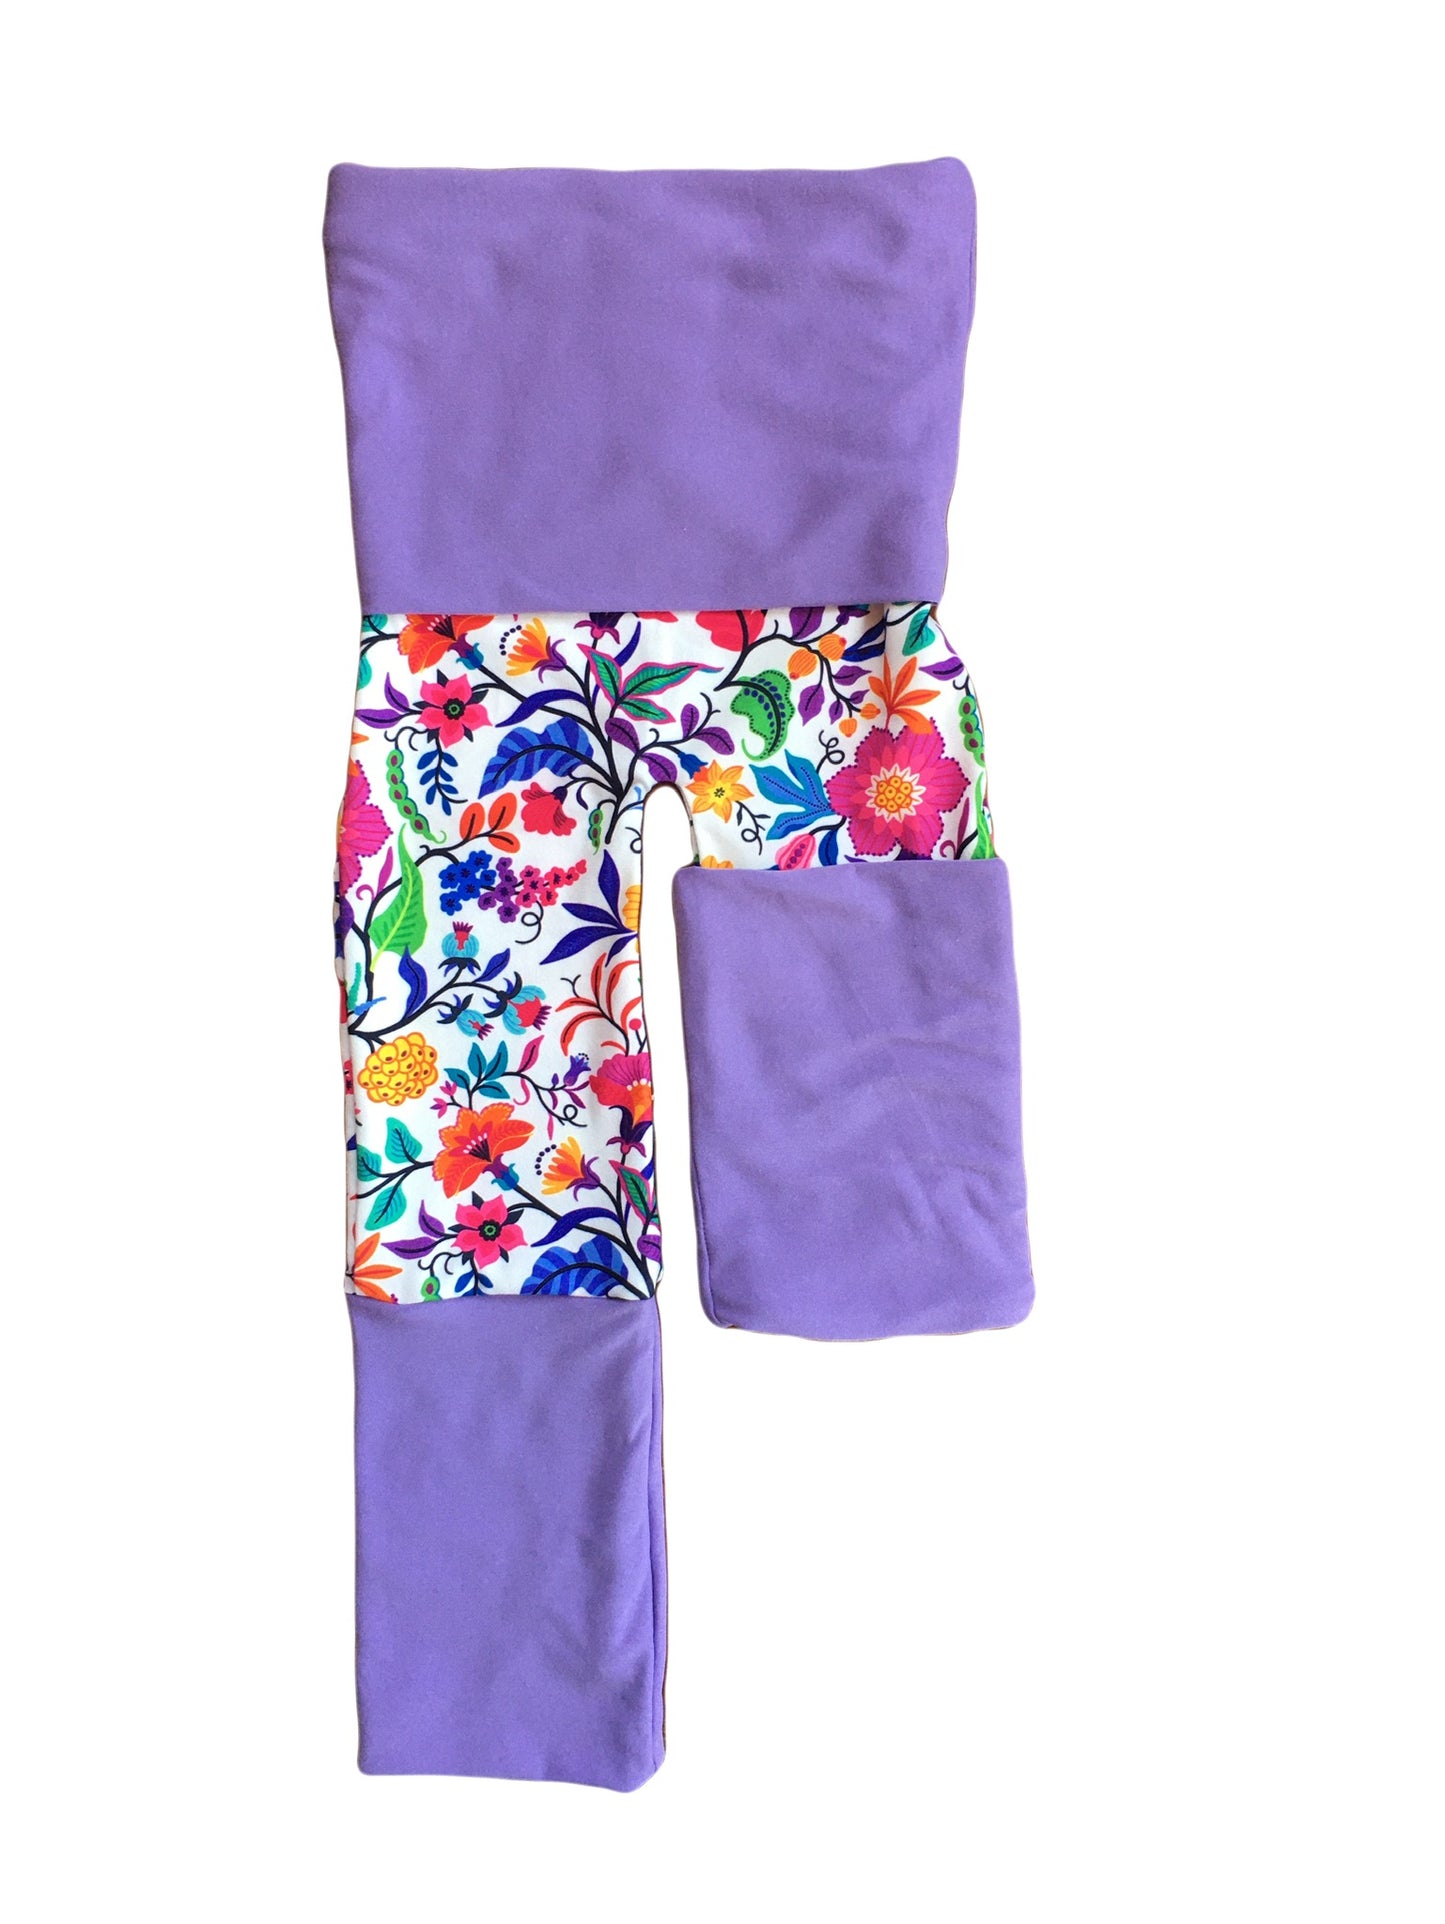 Adjustable Pants - Flower with Light Purple